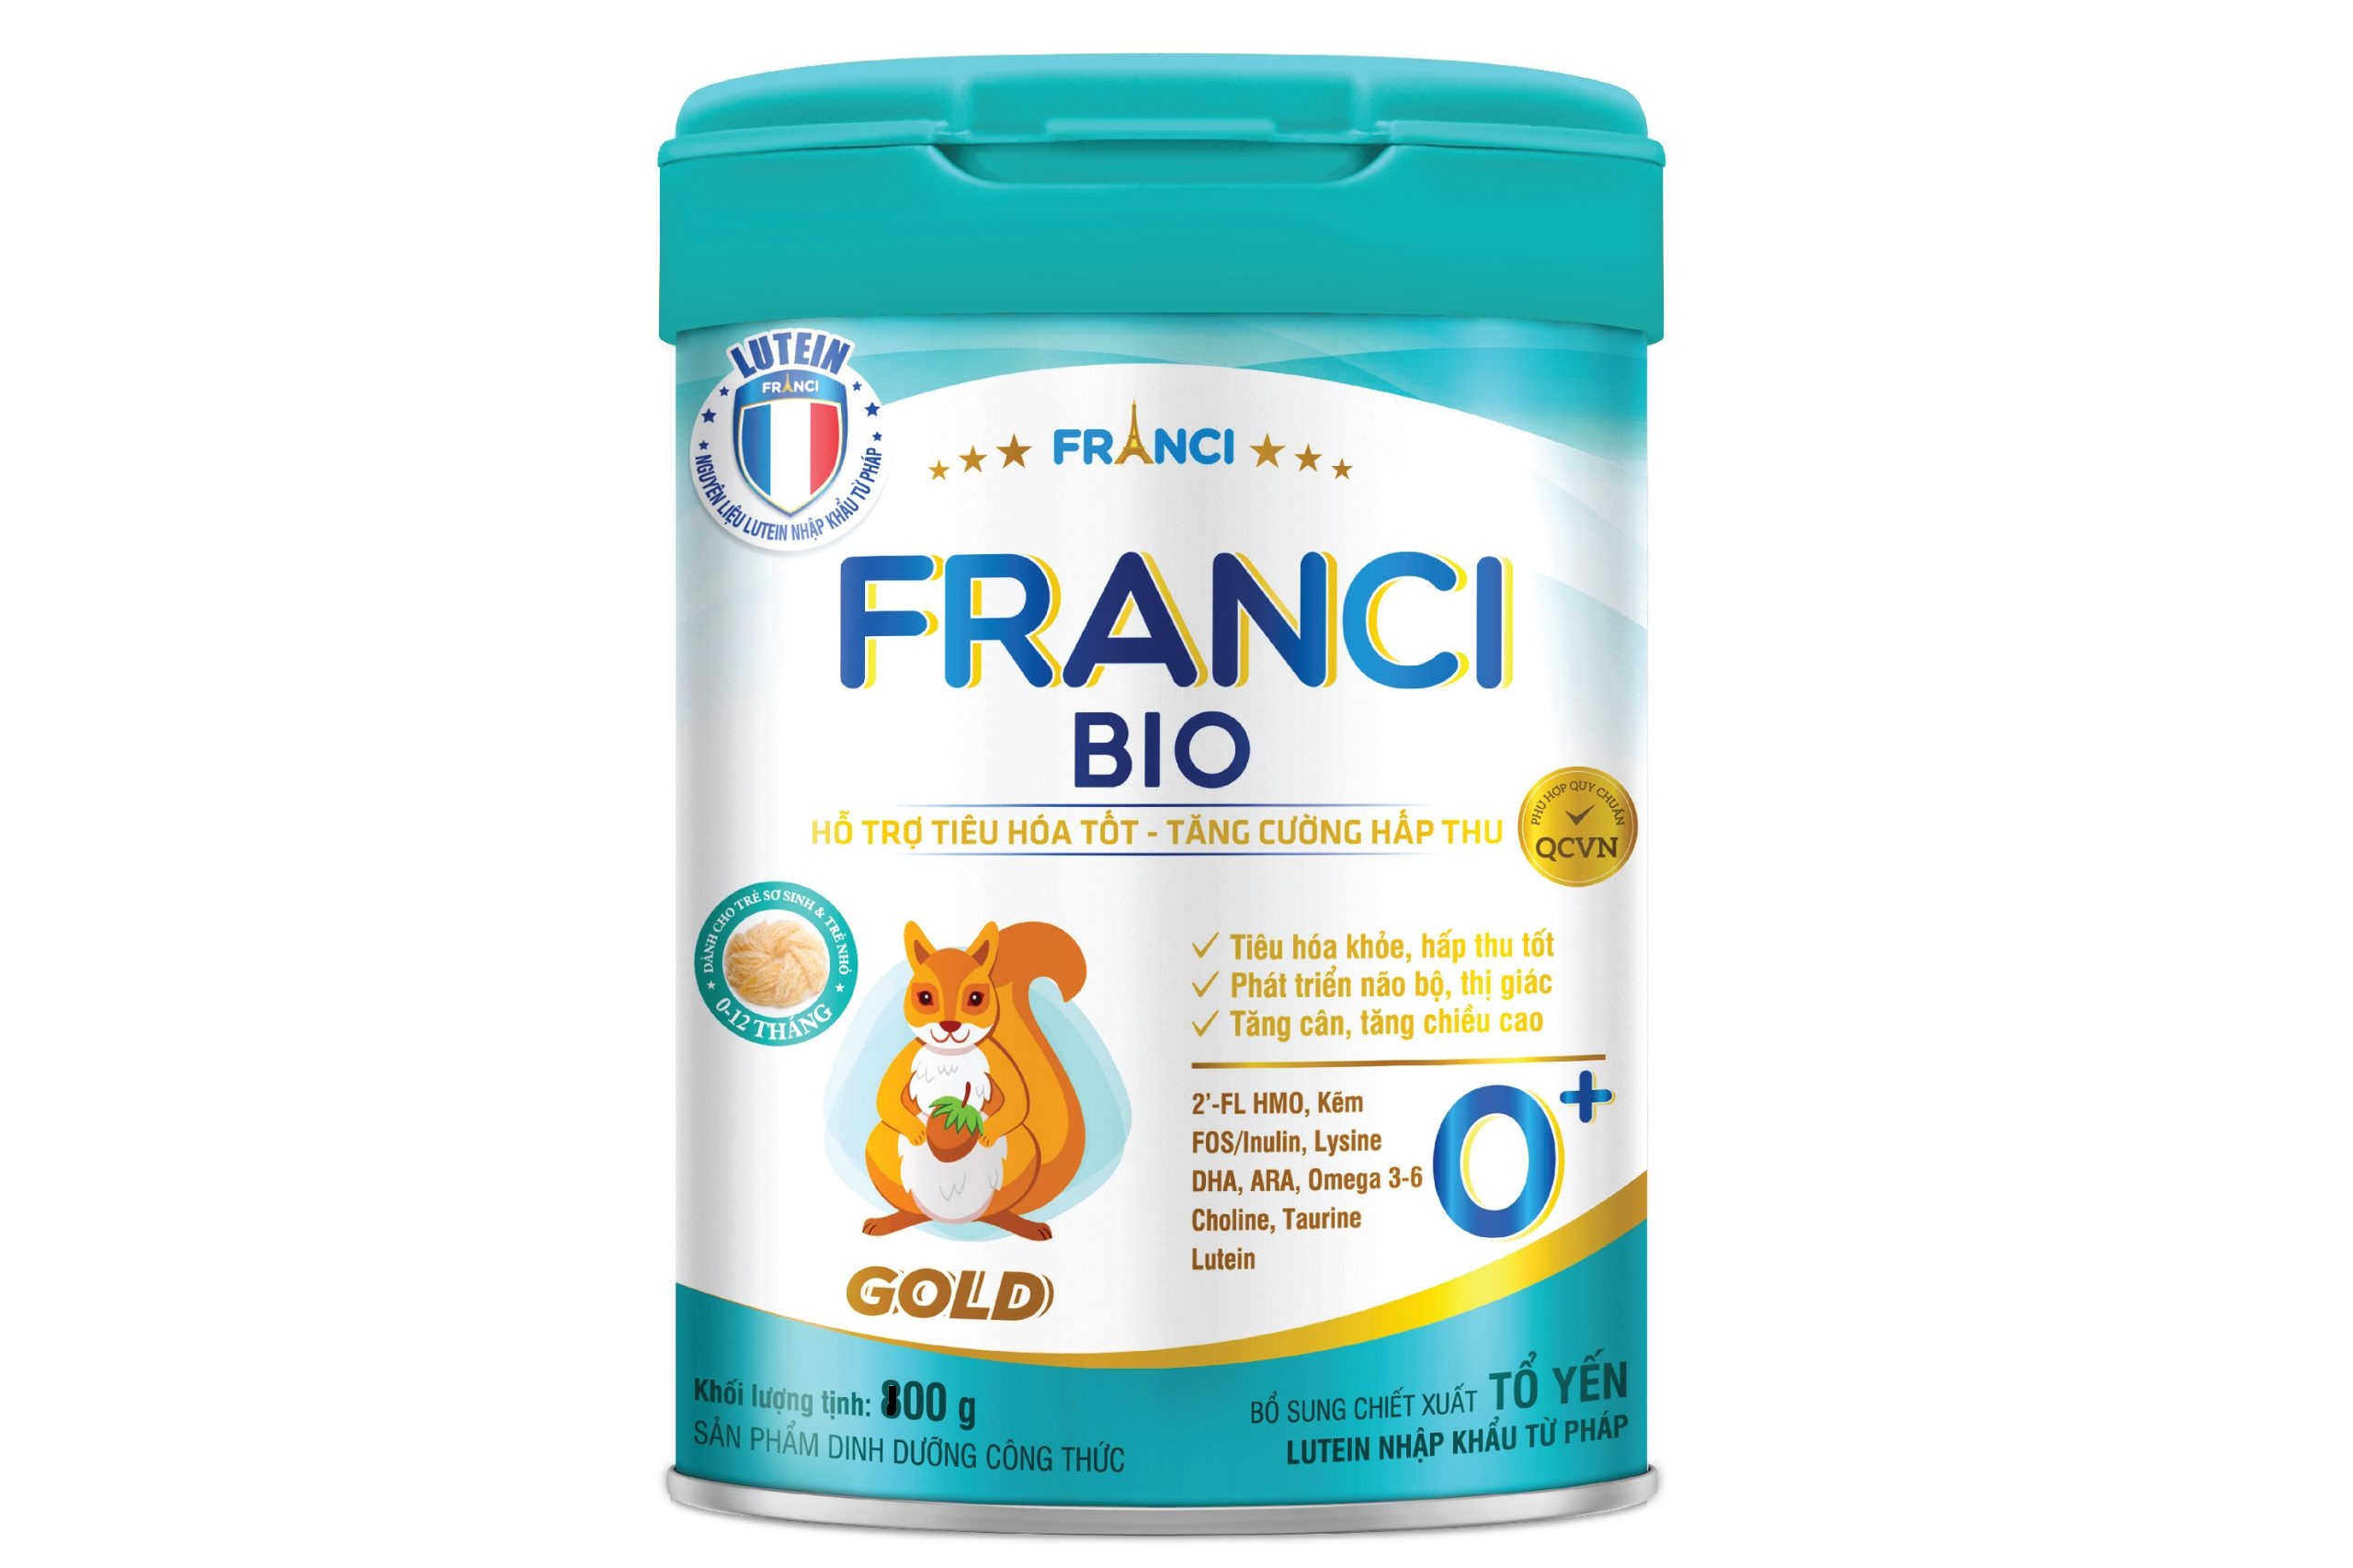 Sữa công thức FRANCI BIO GOLD 0+ lon 400g – Hỗ trợ tiêu hóa – Tăng cường hấp thu